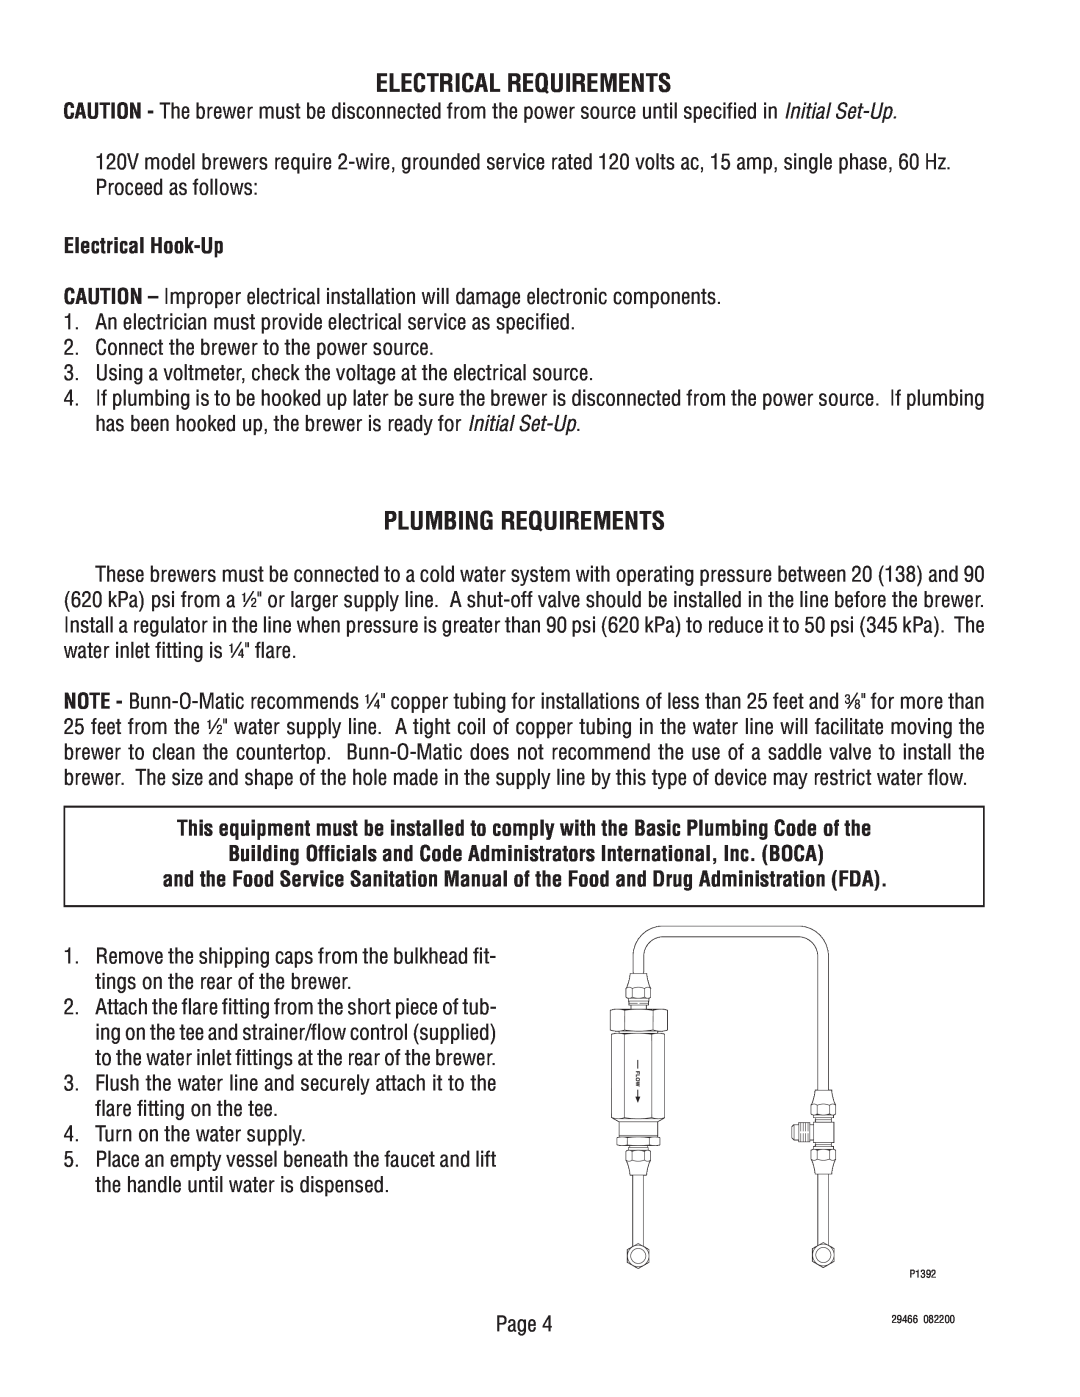 Bunn twf-ez service manual Electrical Requirements, Plumbing Requirements, Electrical Hook-Up 